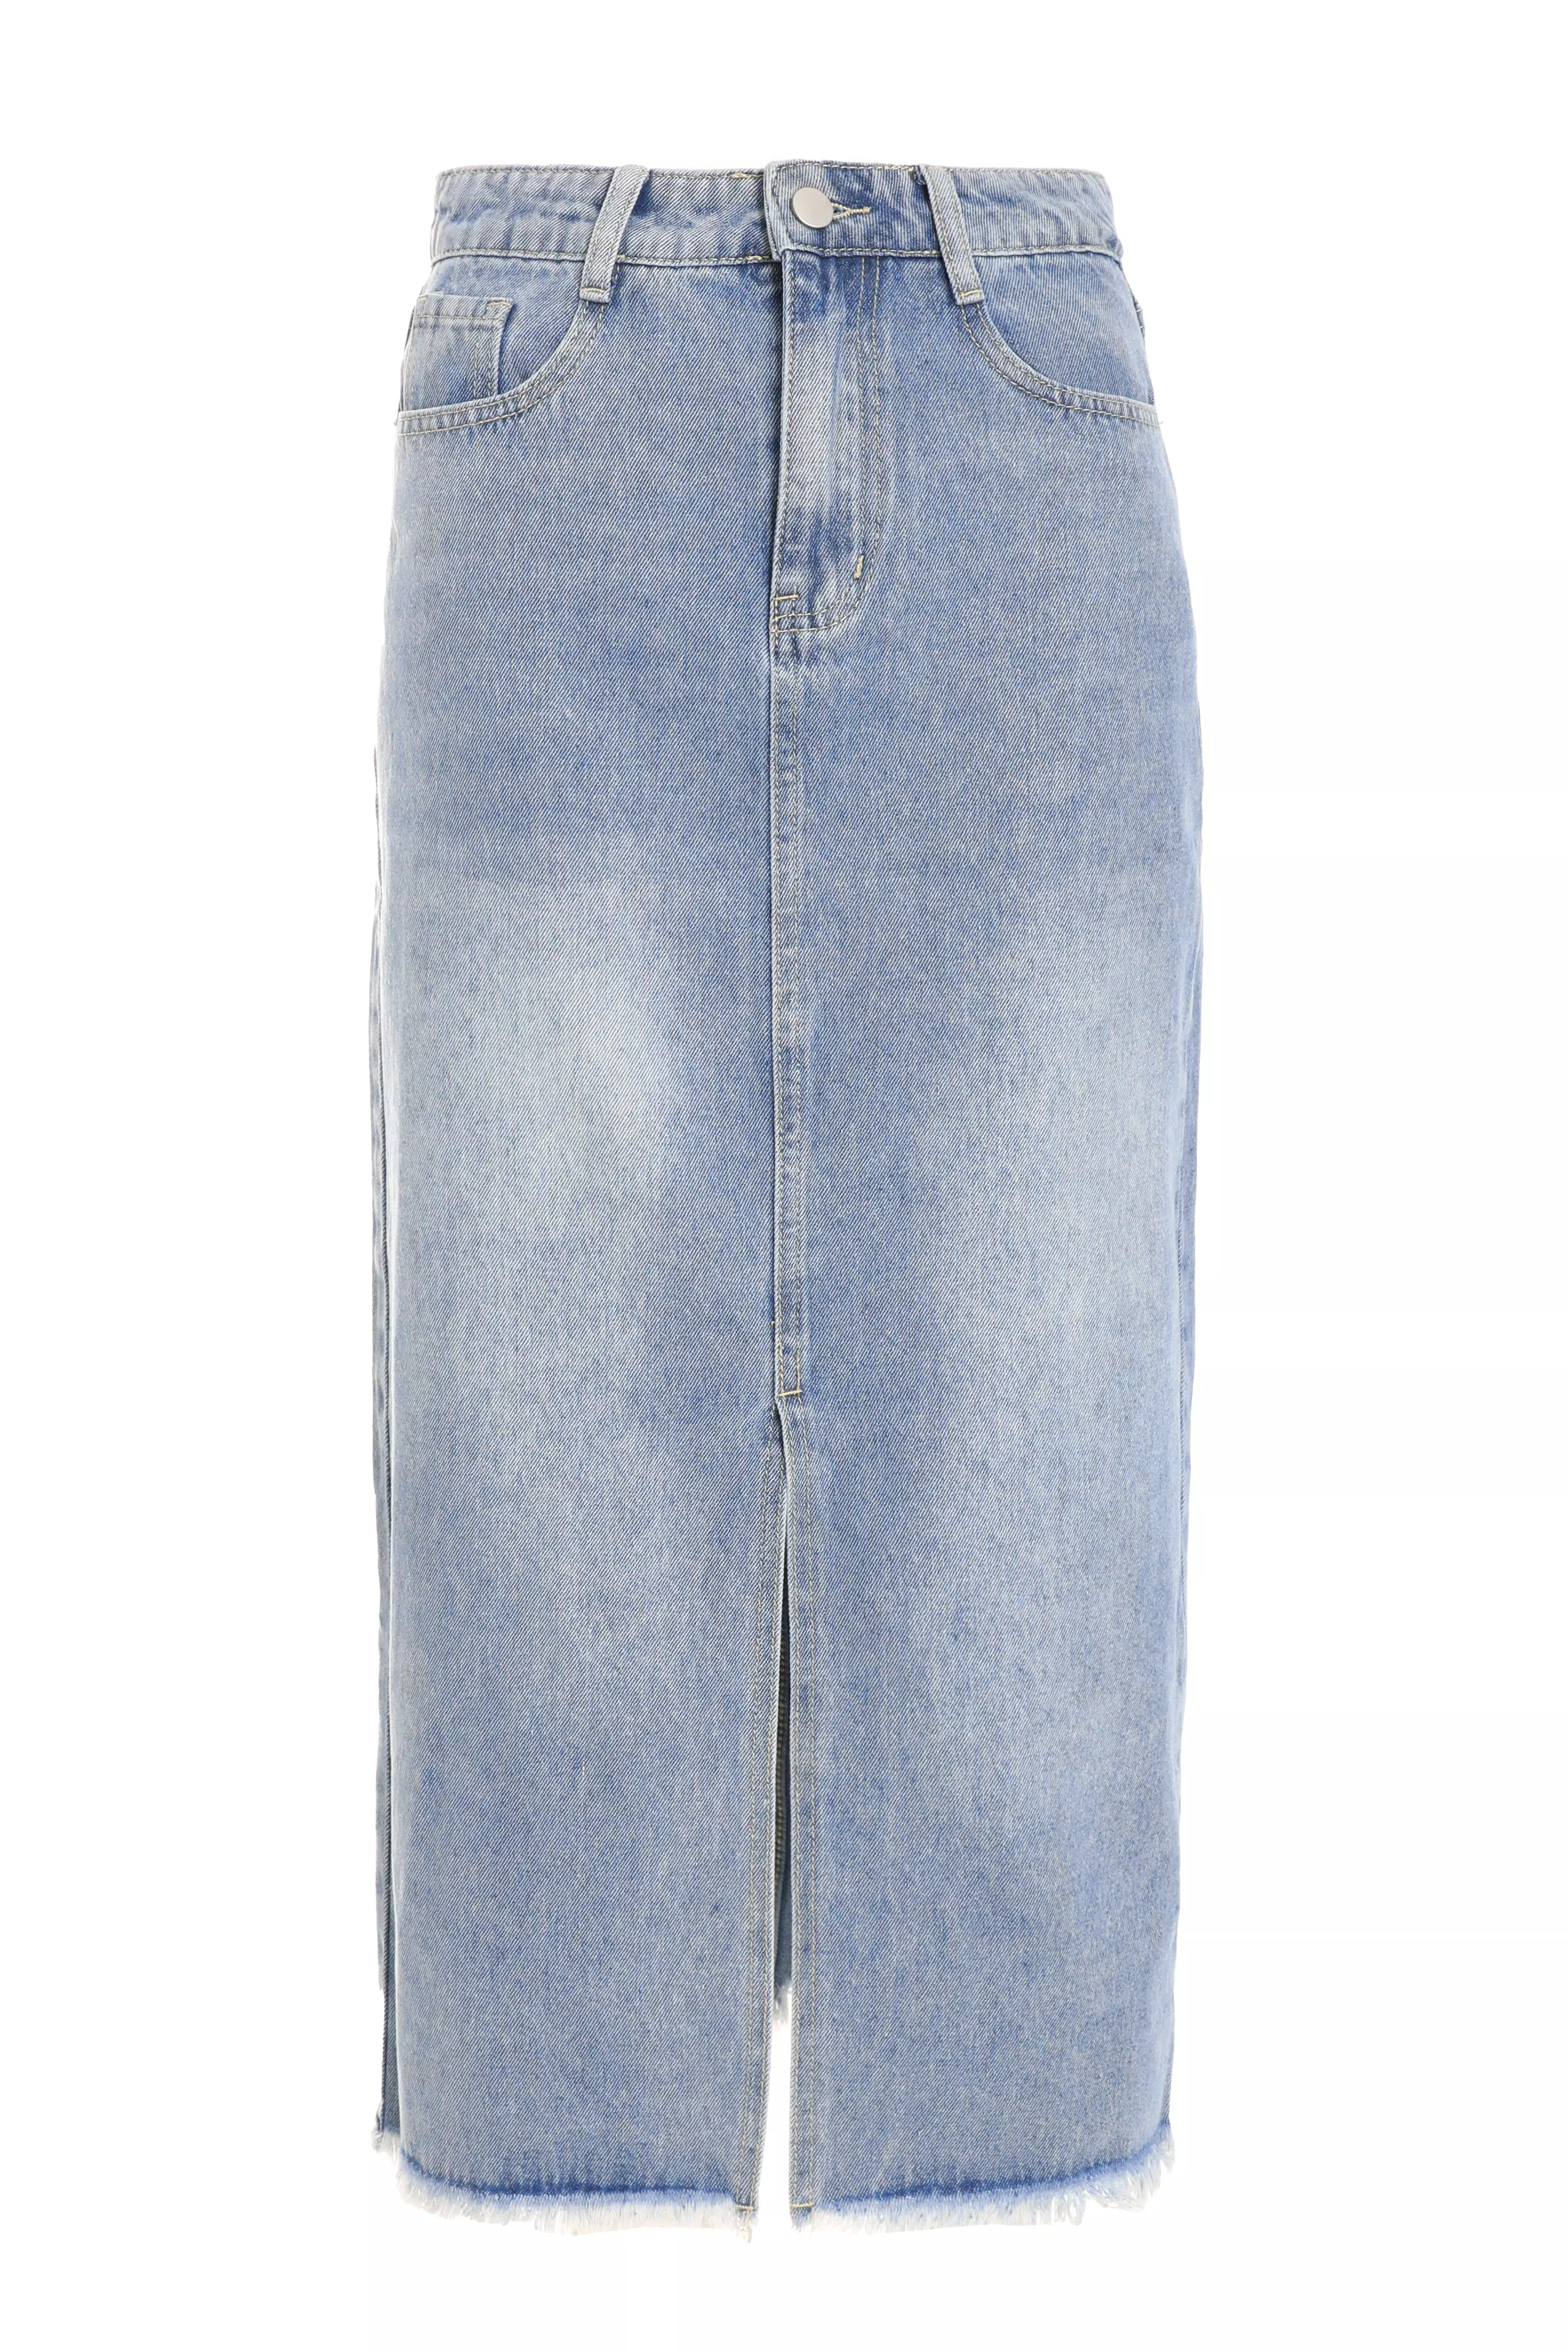 Blue Denim Midi Skirt - QUIZ Clothing